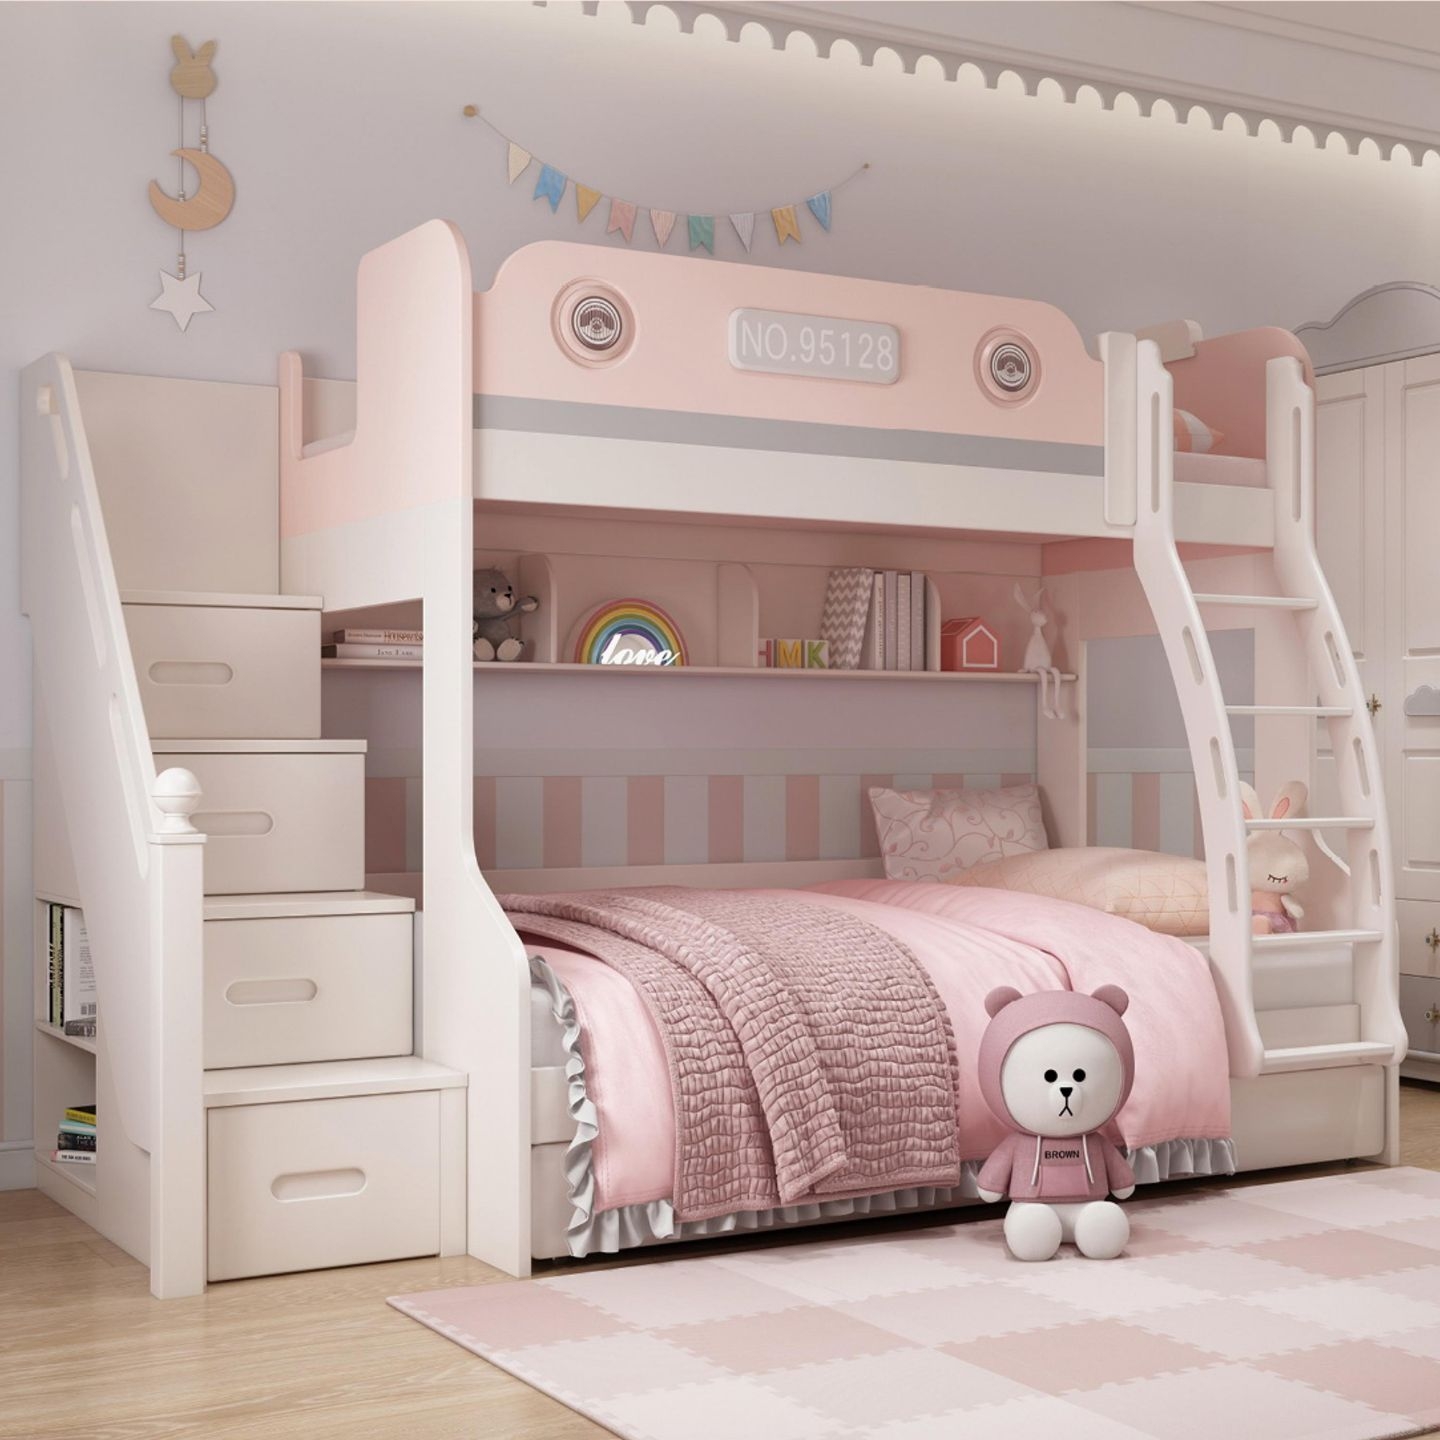 【迪梦星】纷趣儿童系列 女生房间美式上下床创意卡通子母床